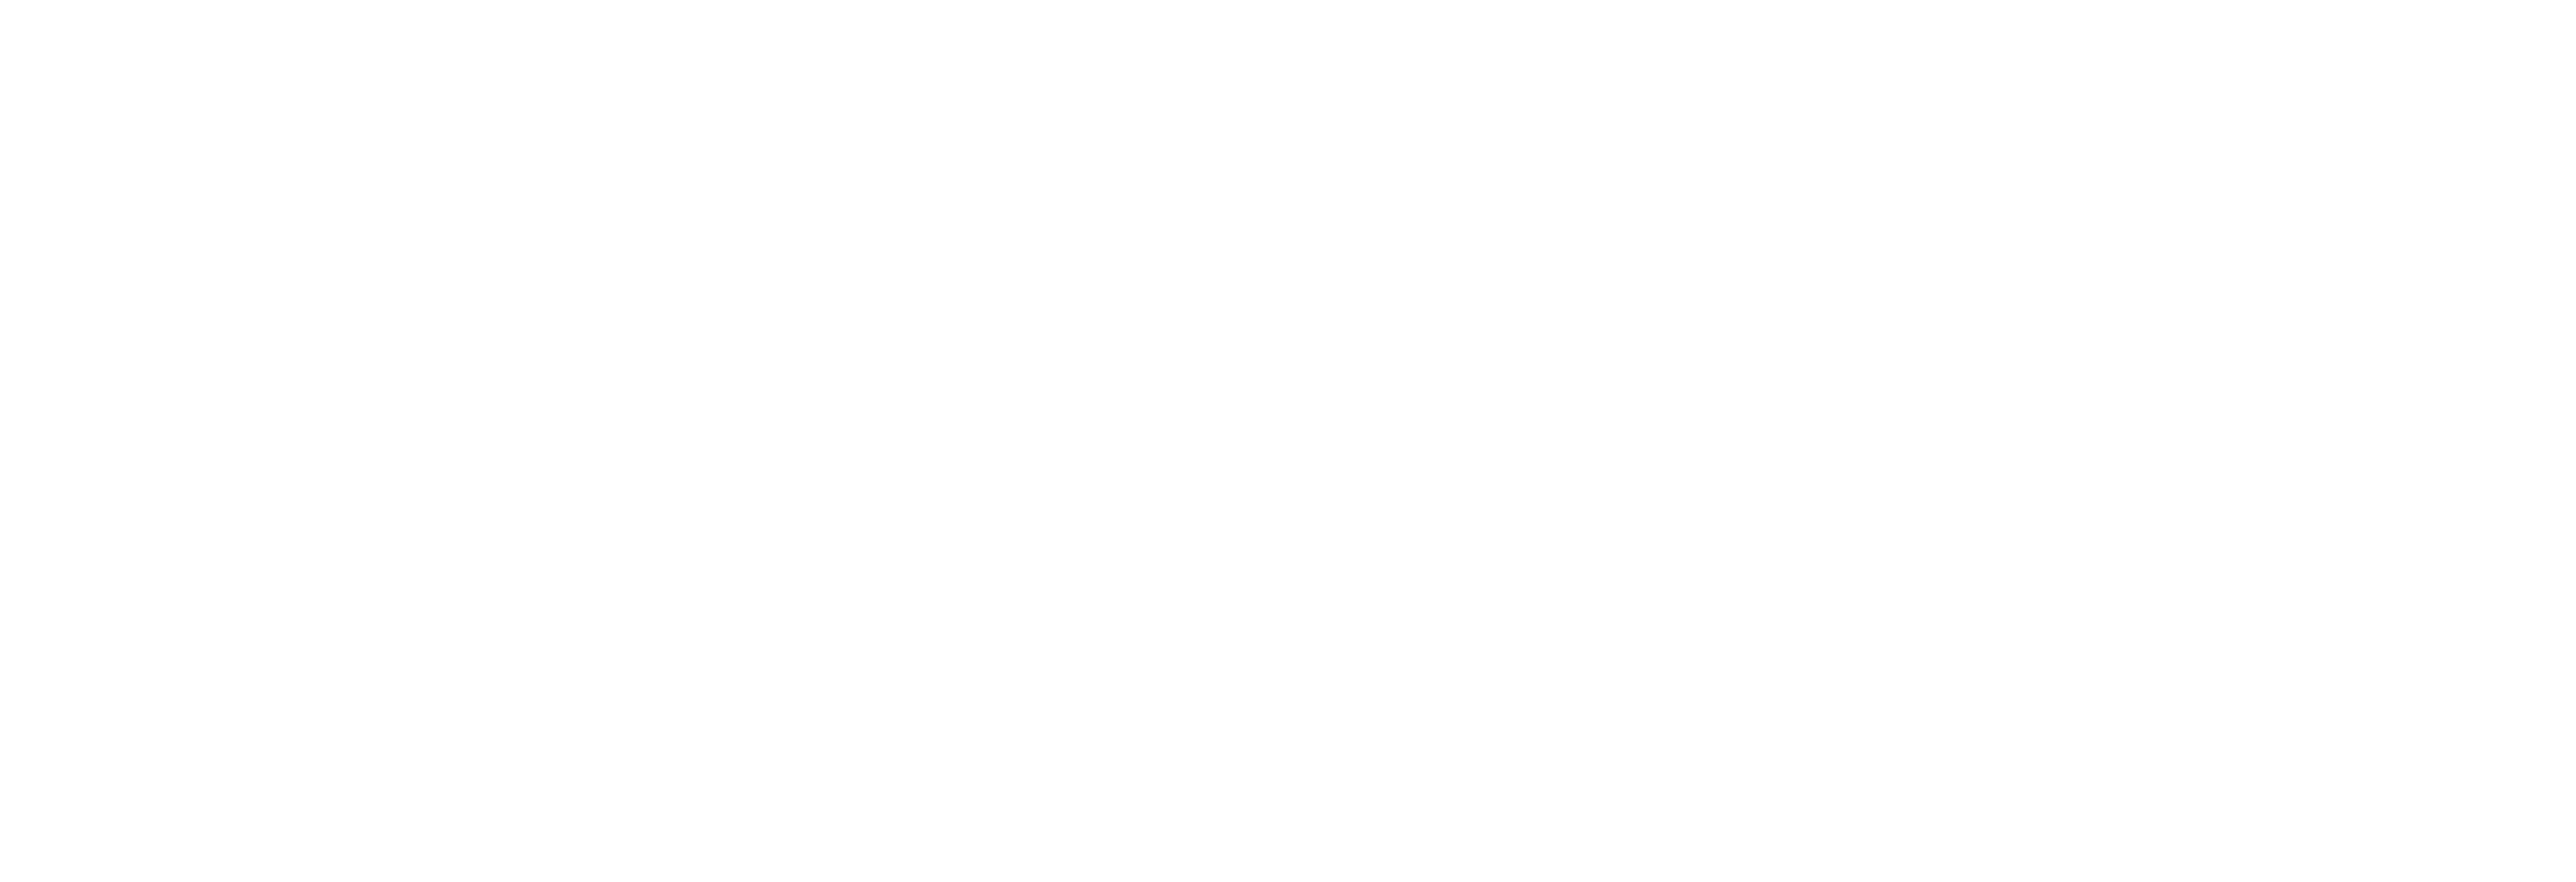 Adam On Engineering